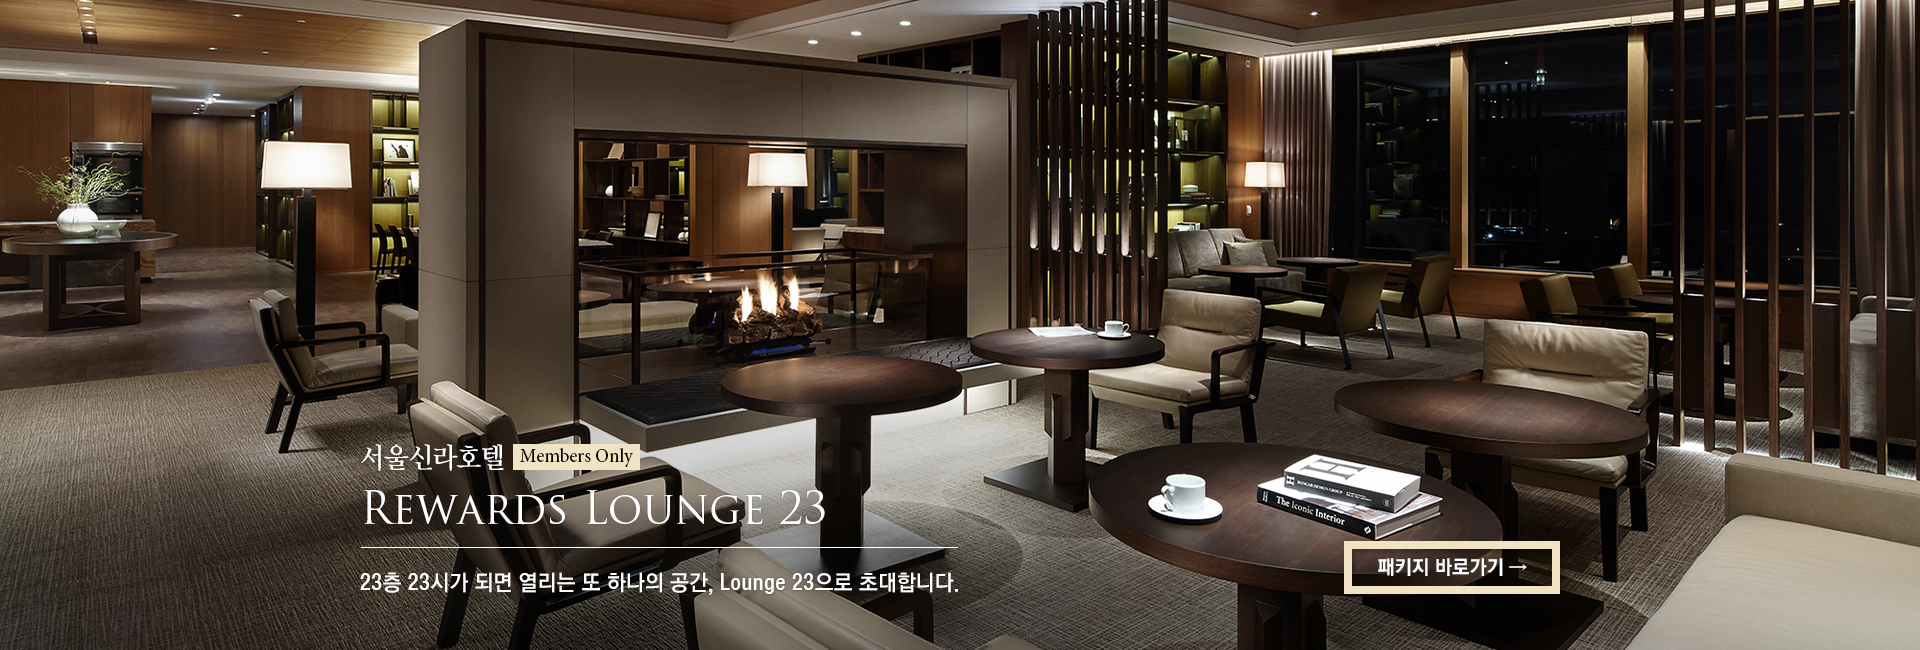 [서울신라호텔] Rewards Lounge 23 : Starry Night in Lounge 23